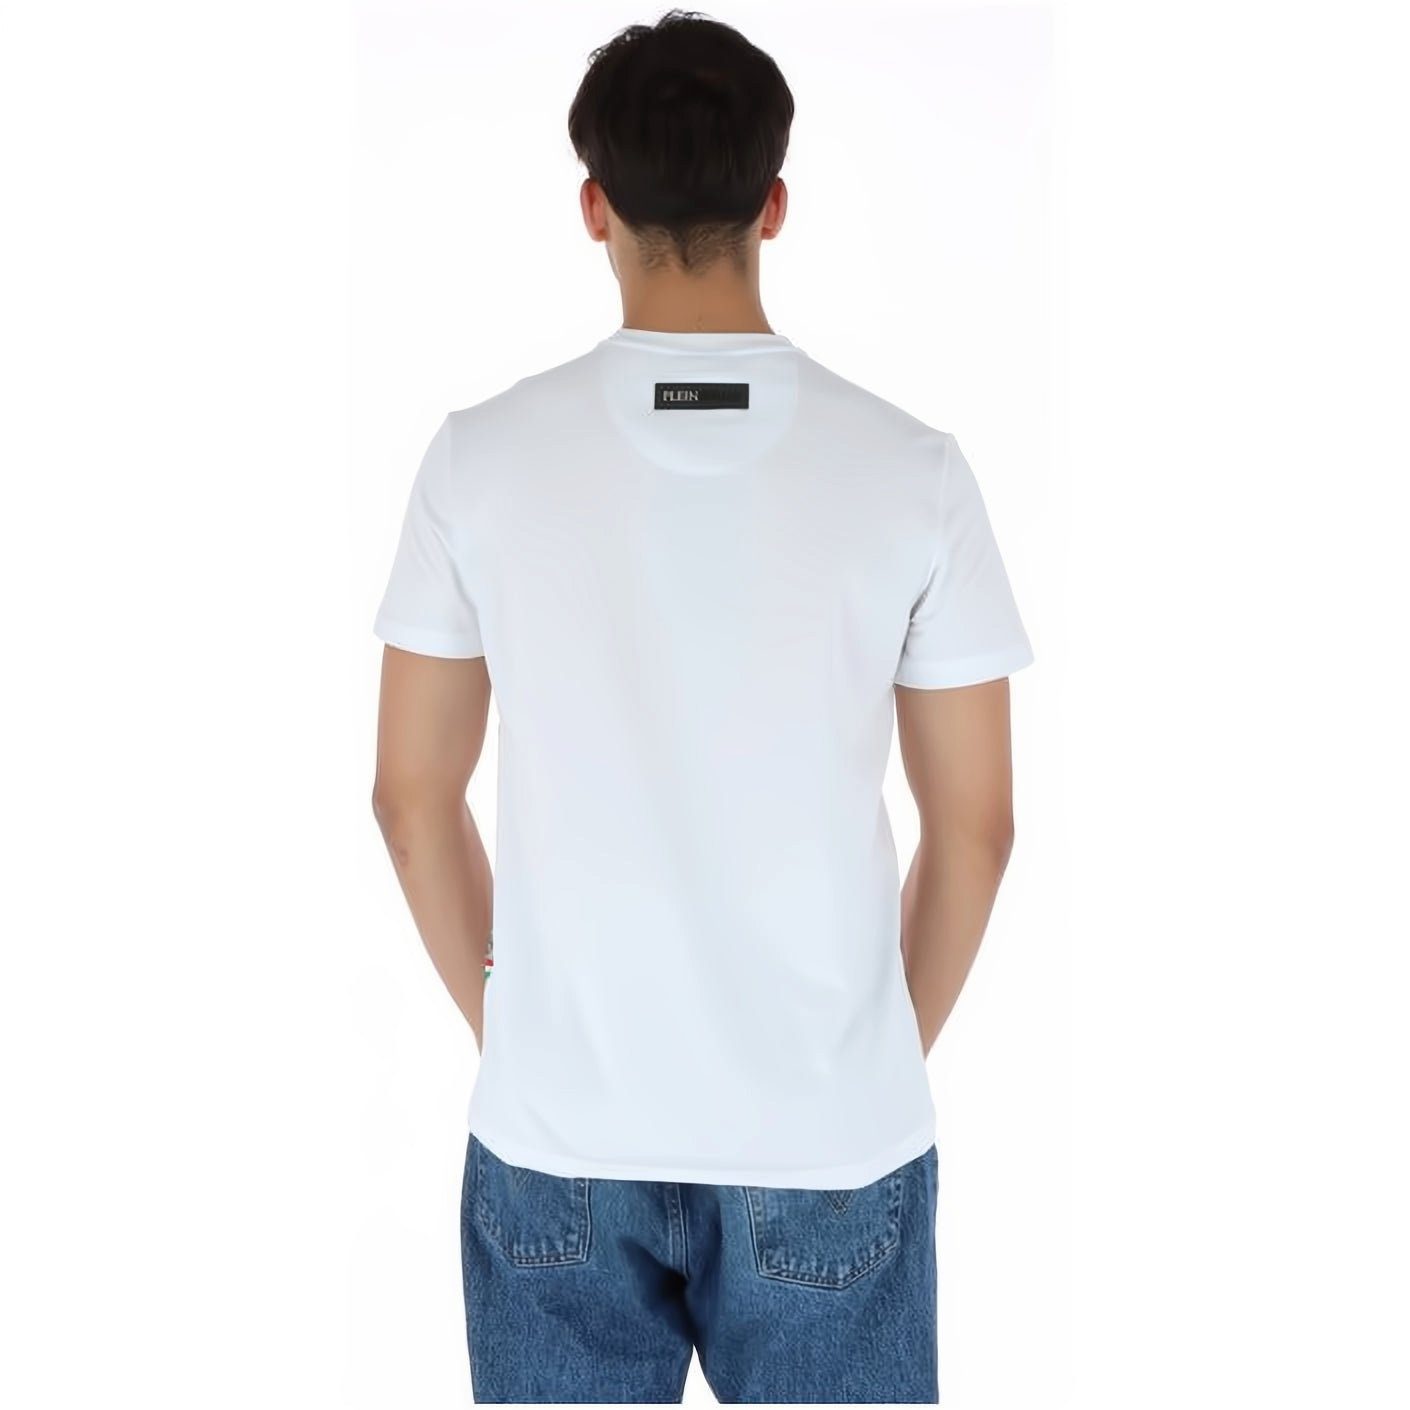 T-Shirt NECK PLEIN ROUND Tragekomfort, Look, hoher Stylischer SPORT Farbauswahl vielfältige